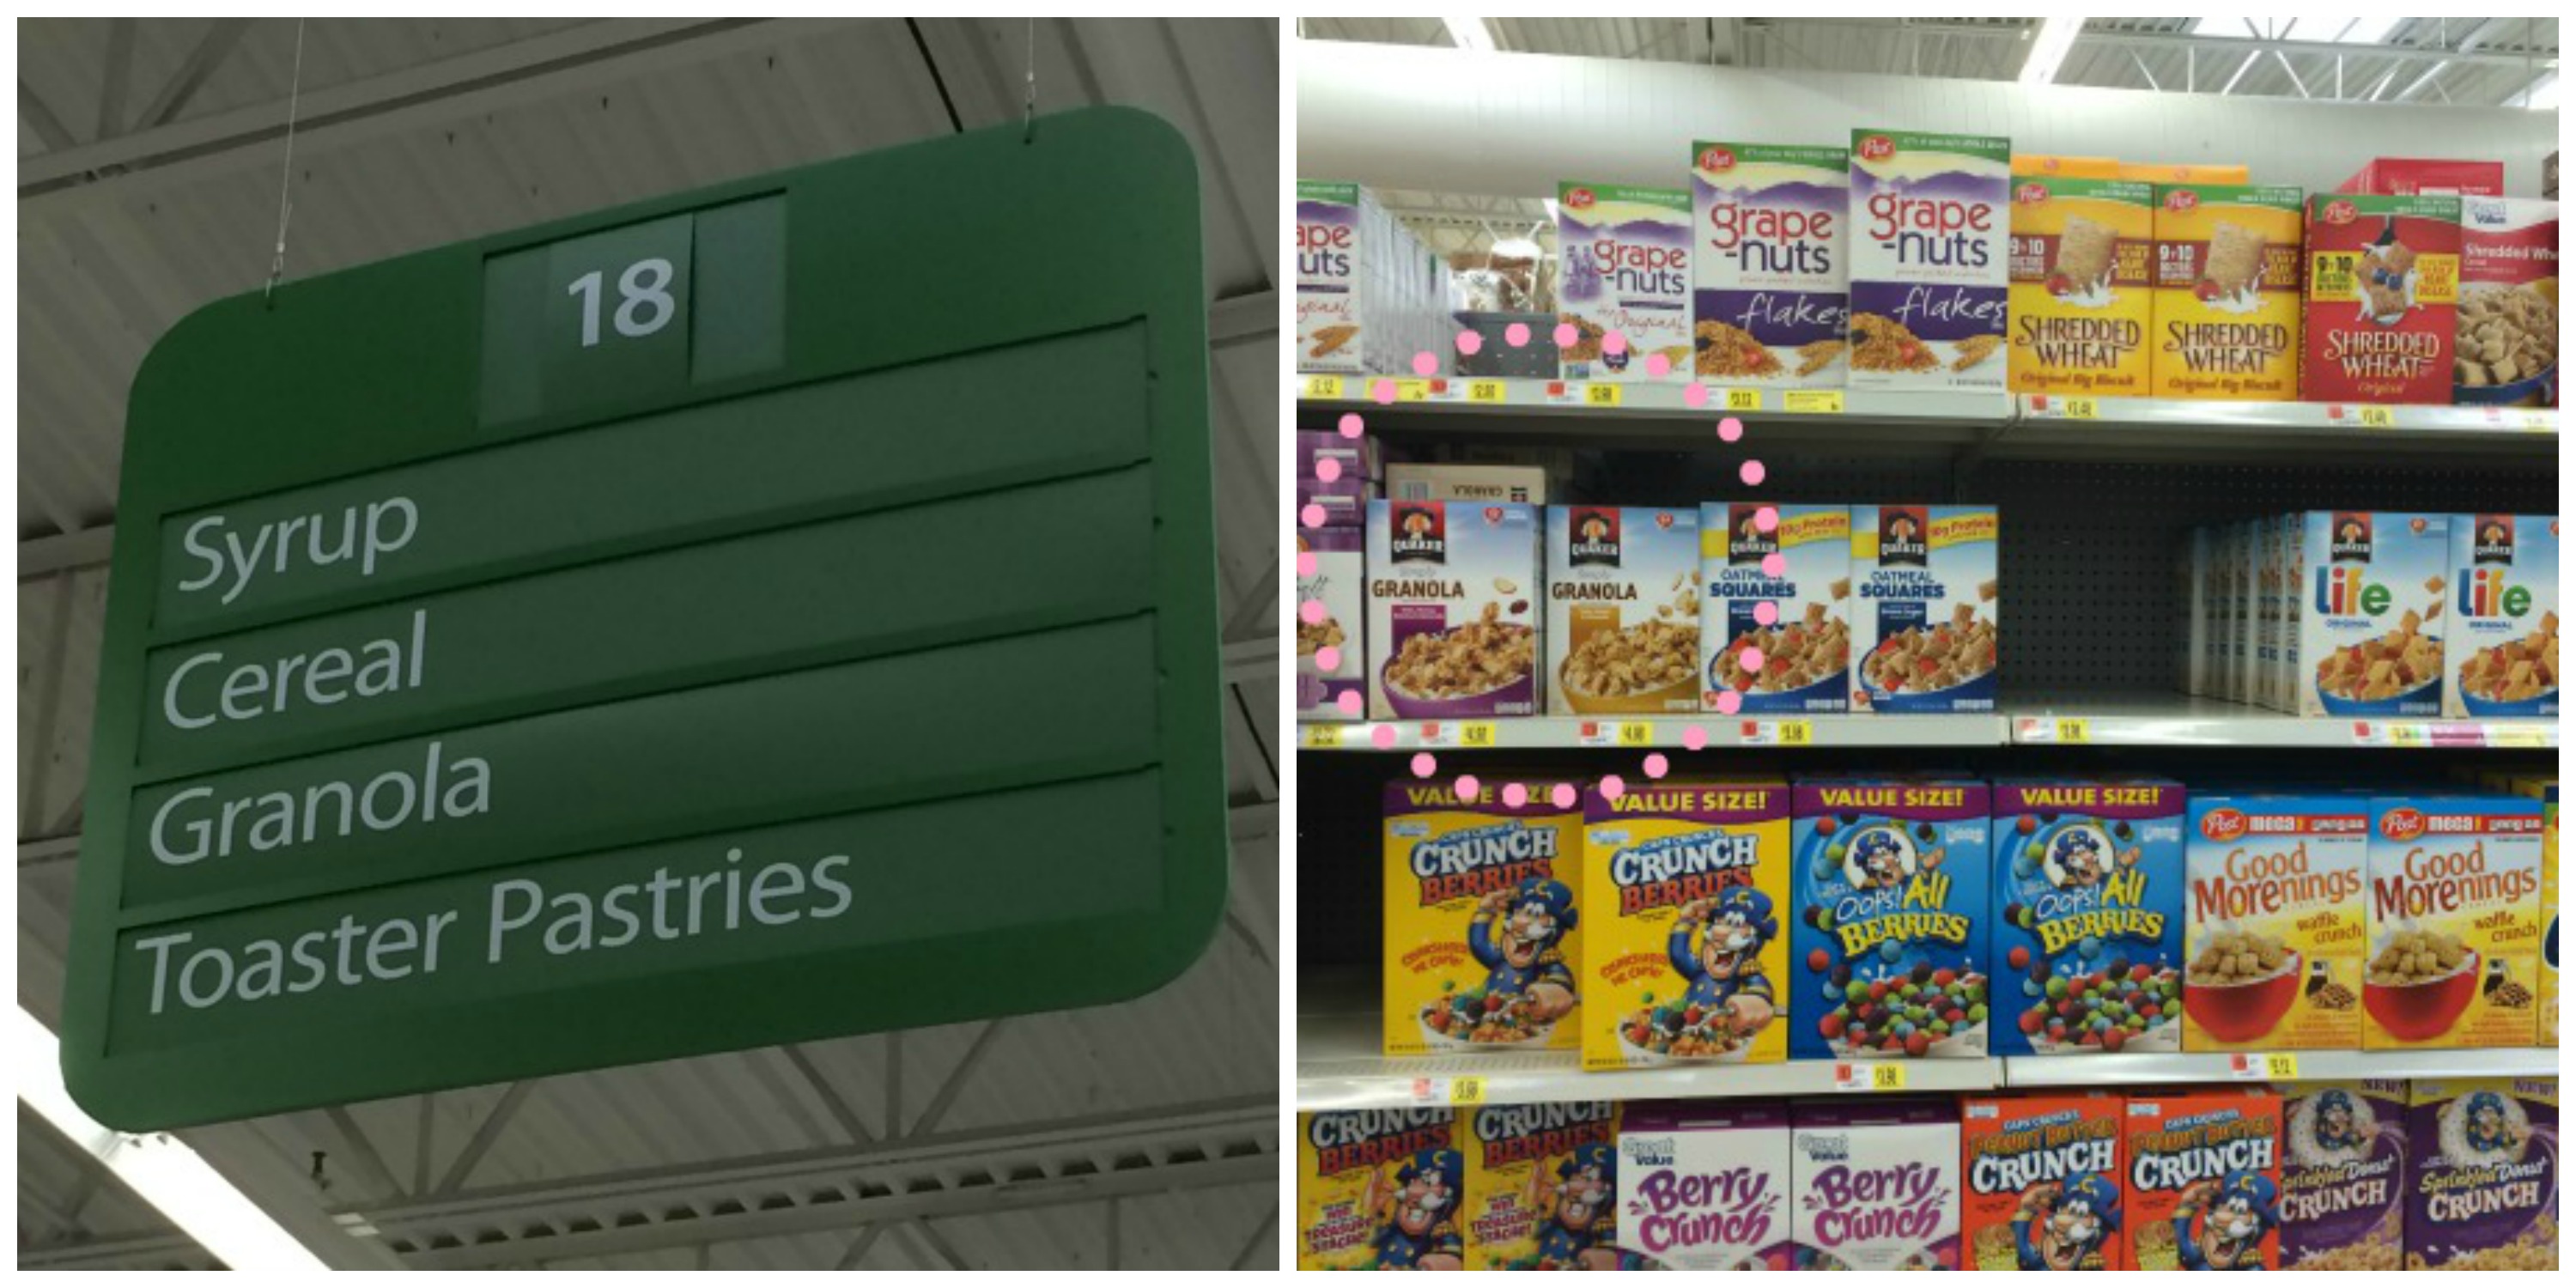 Quaker Cereals at Walmart  #QuakerUp #LoveMyCereal